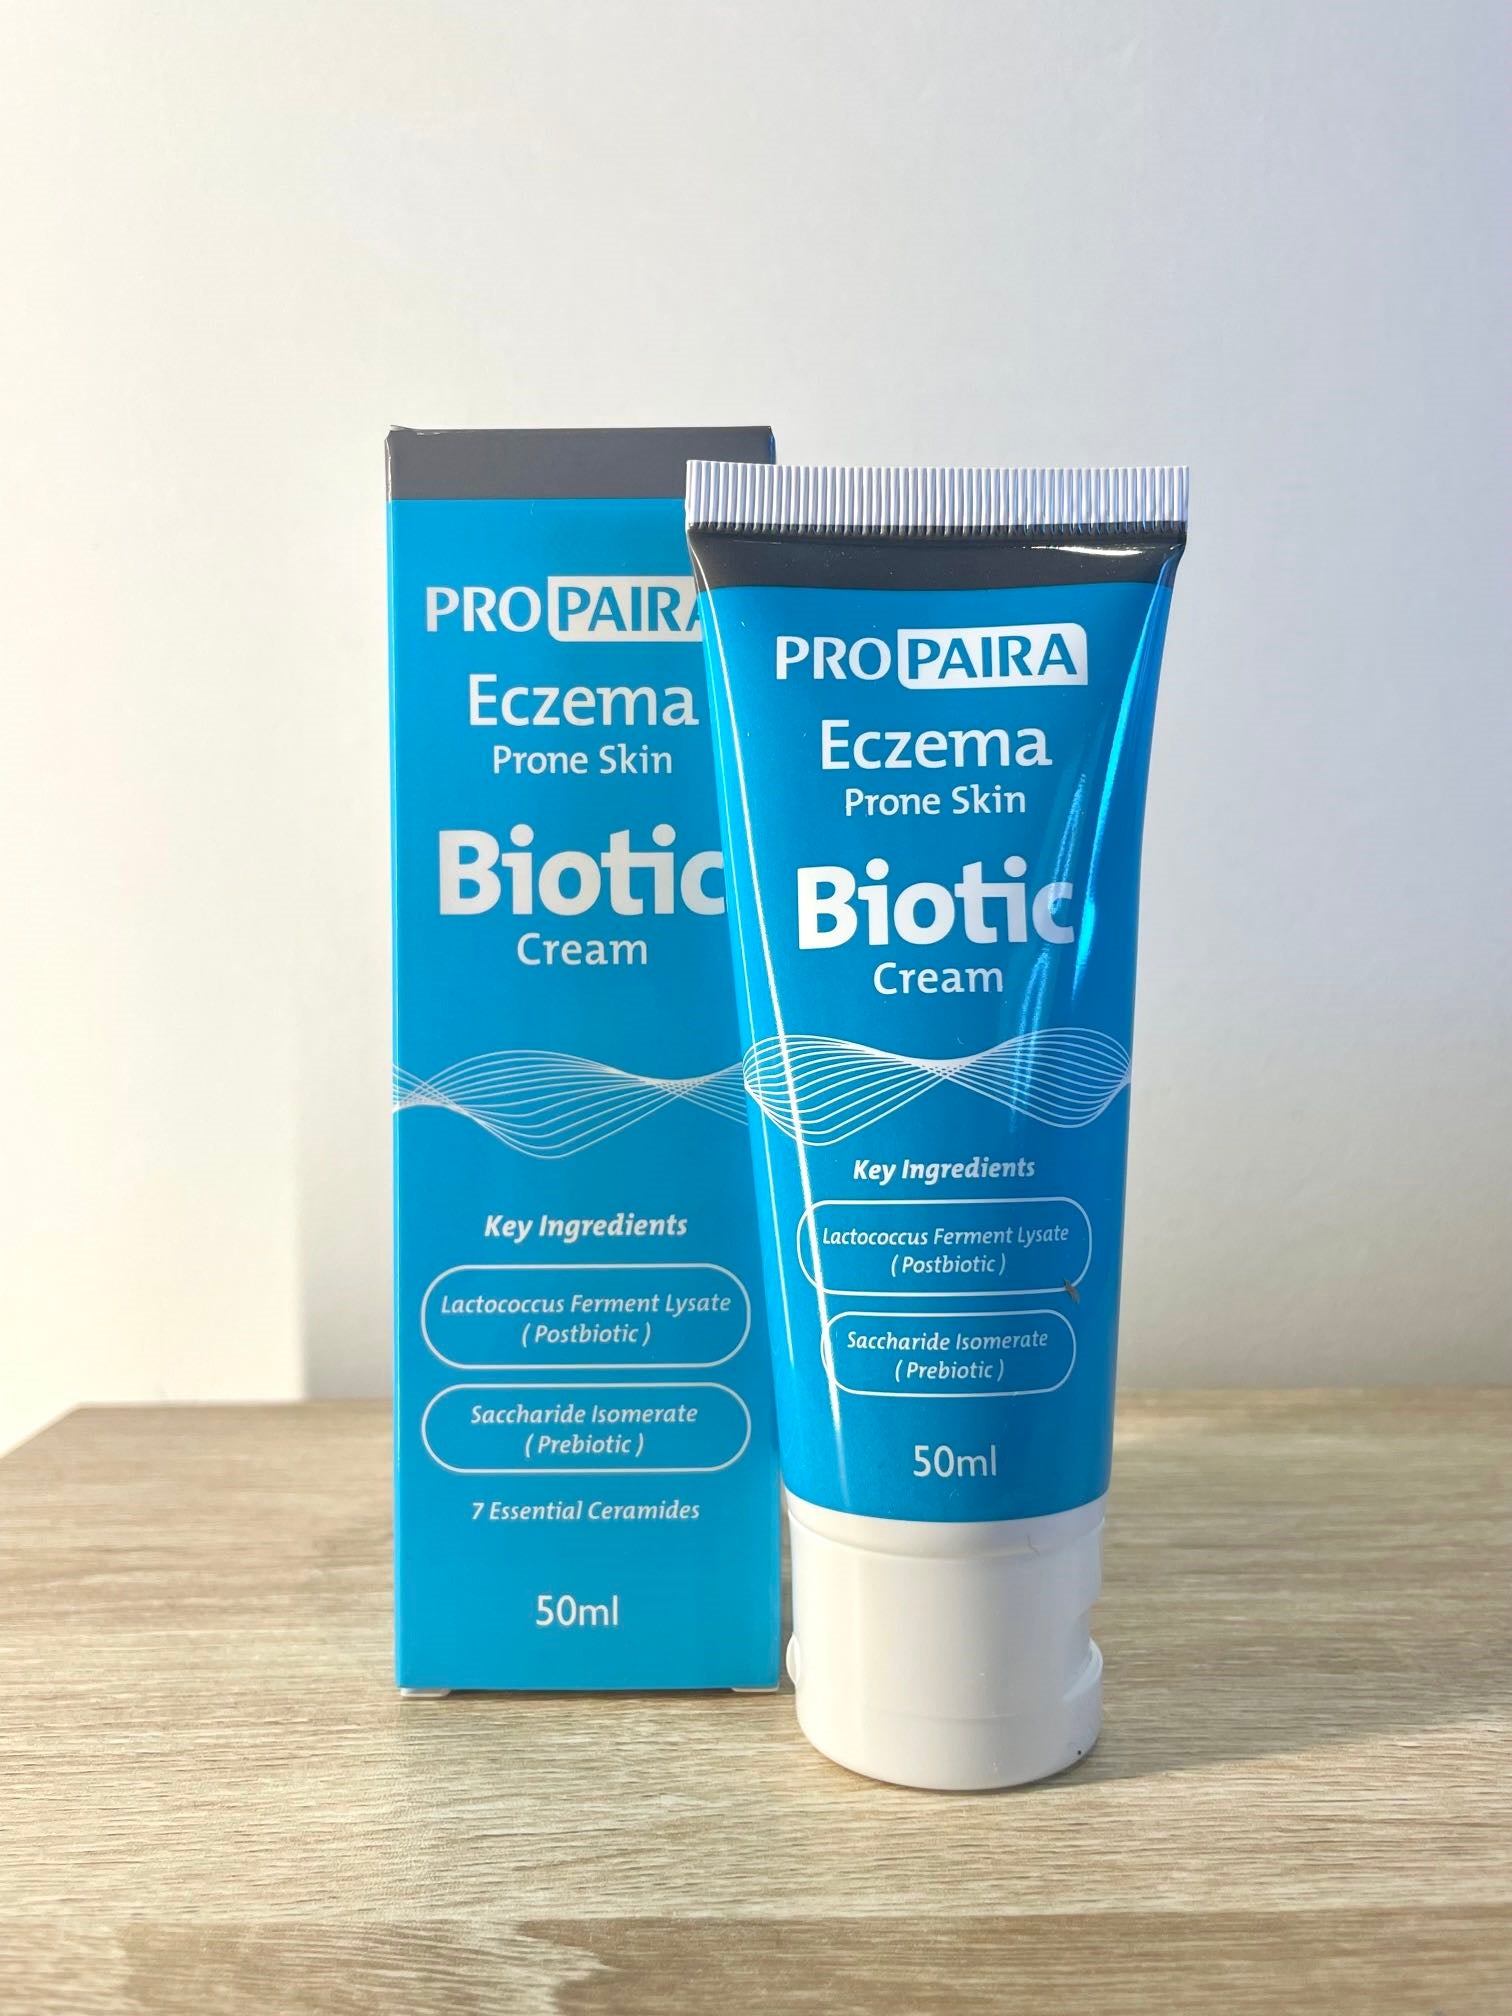 Propaira Biotic Cream for Eczema Prone Skin | skintoheart